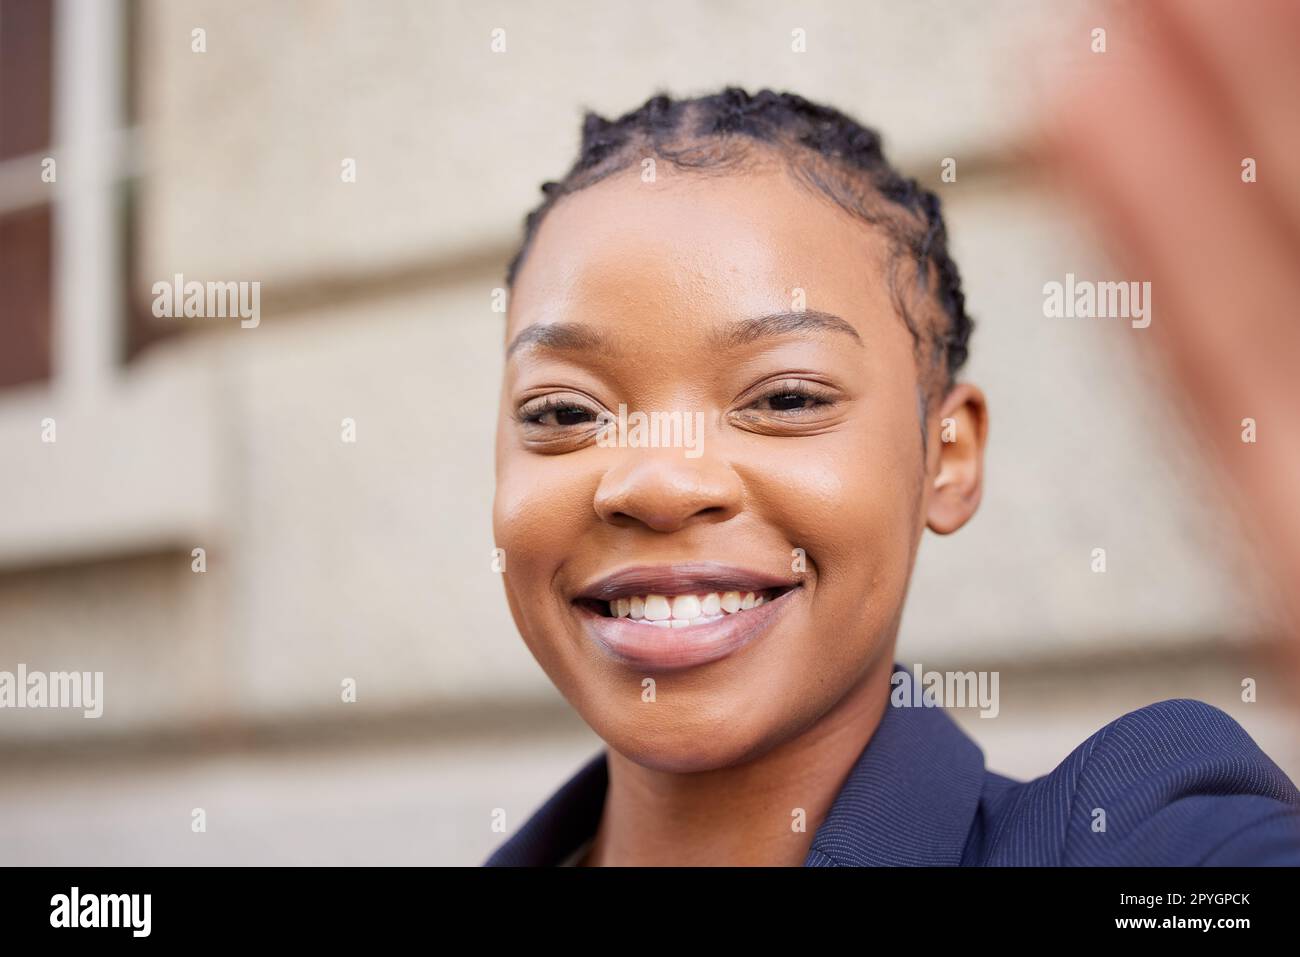 Donna nera, volto aziendale e sorriso per un selfie mentre sei online per un aggiornamento sui social media sullo stato o sul profilo della leadership. Ritratto di imprenditore africano all'aperto felice della scelta di carriera e del futuro Foto Stock